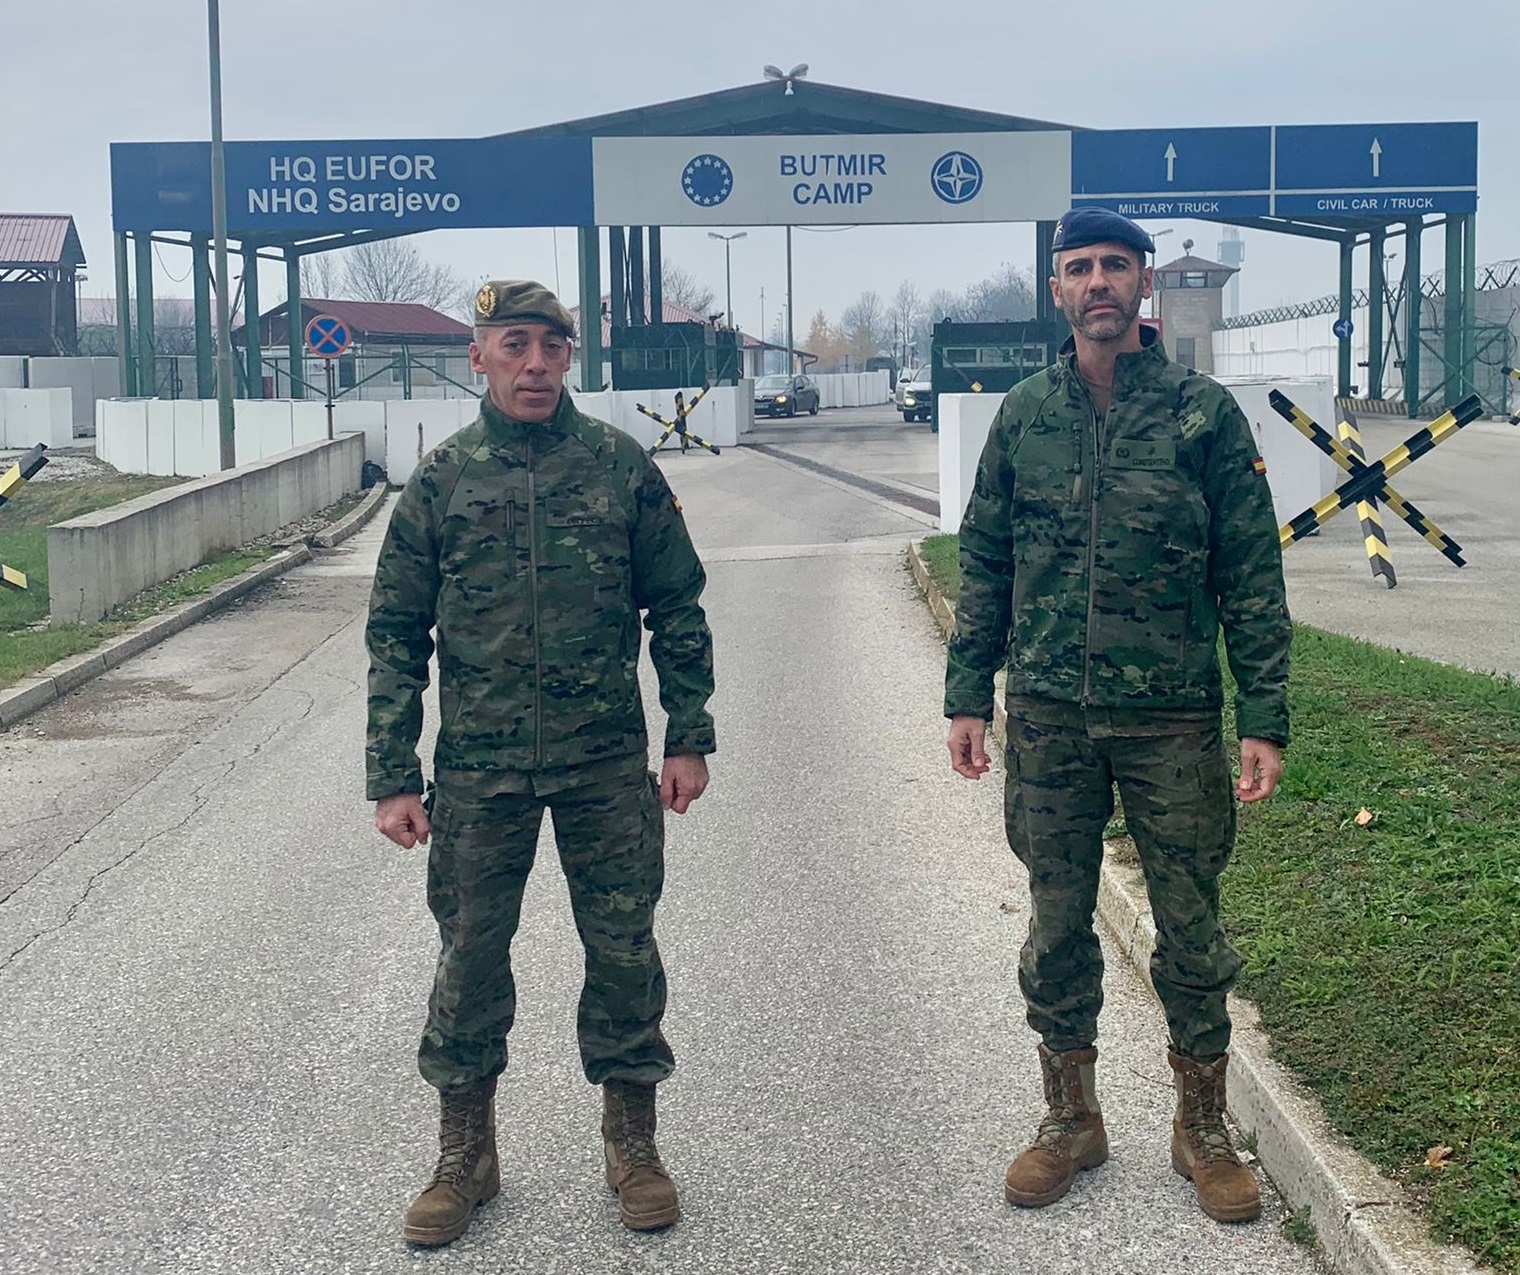 Militares españoles integrados en el Cuartel General de EUFOR